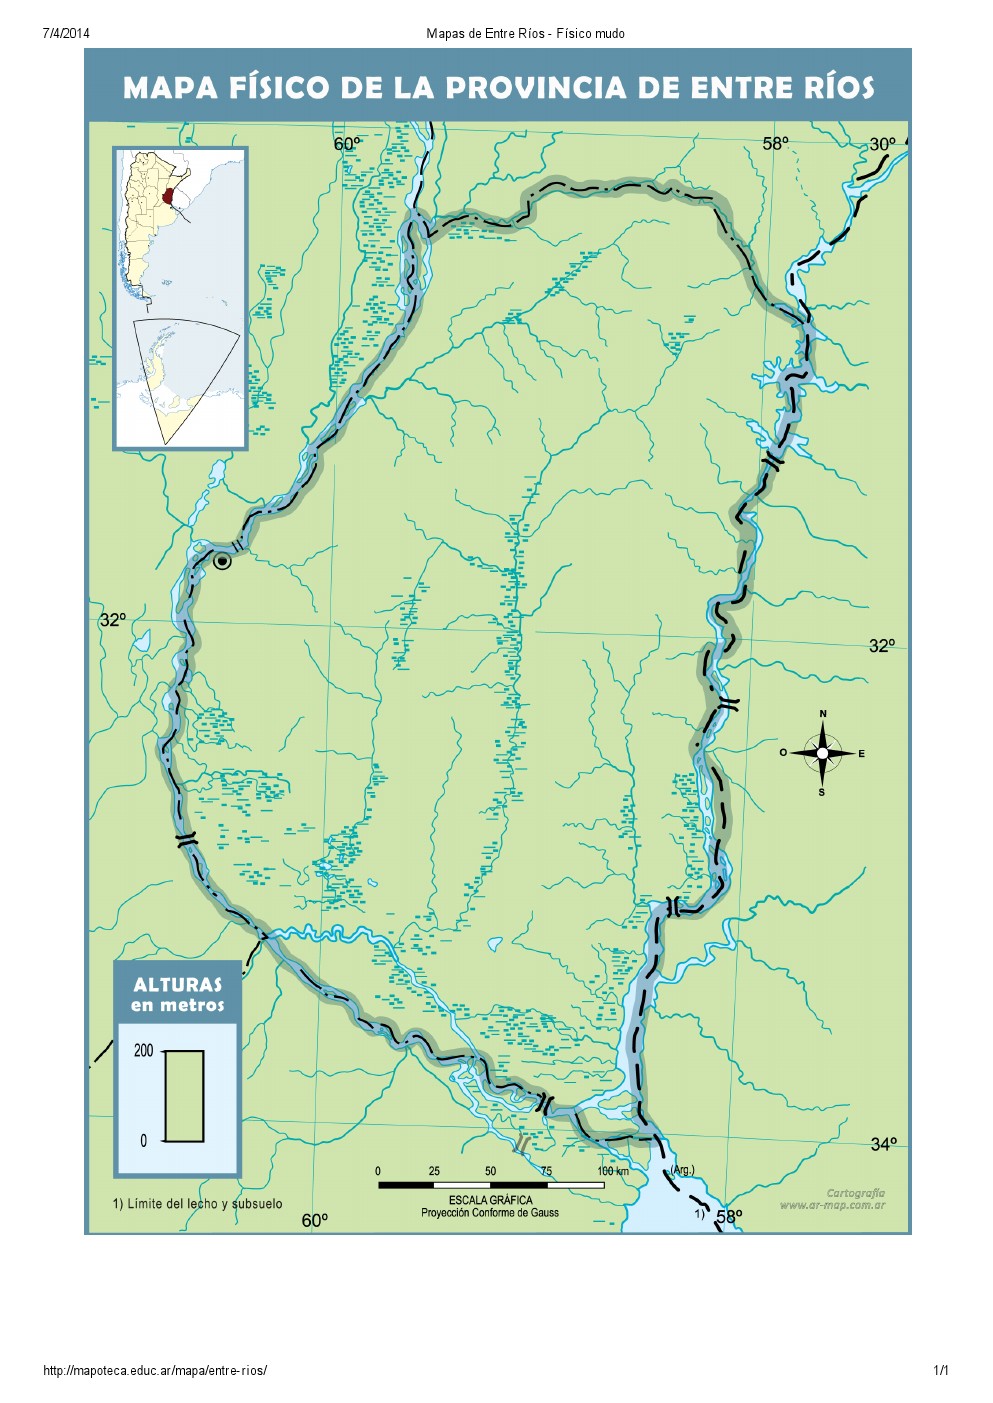 Mapa mudo de ríos de Entre Ríos. Mapoteca de Educ.ar